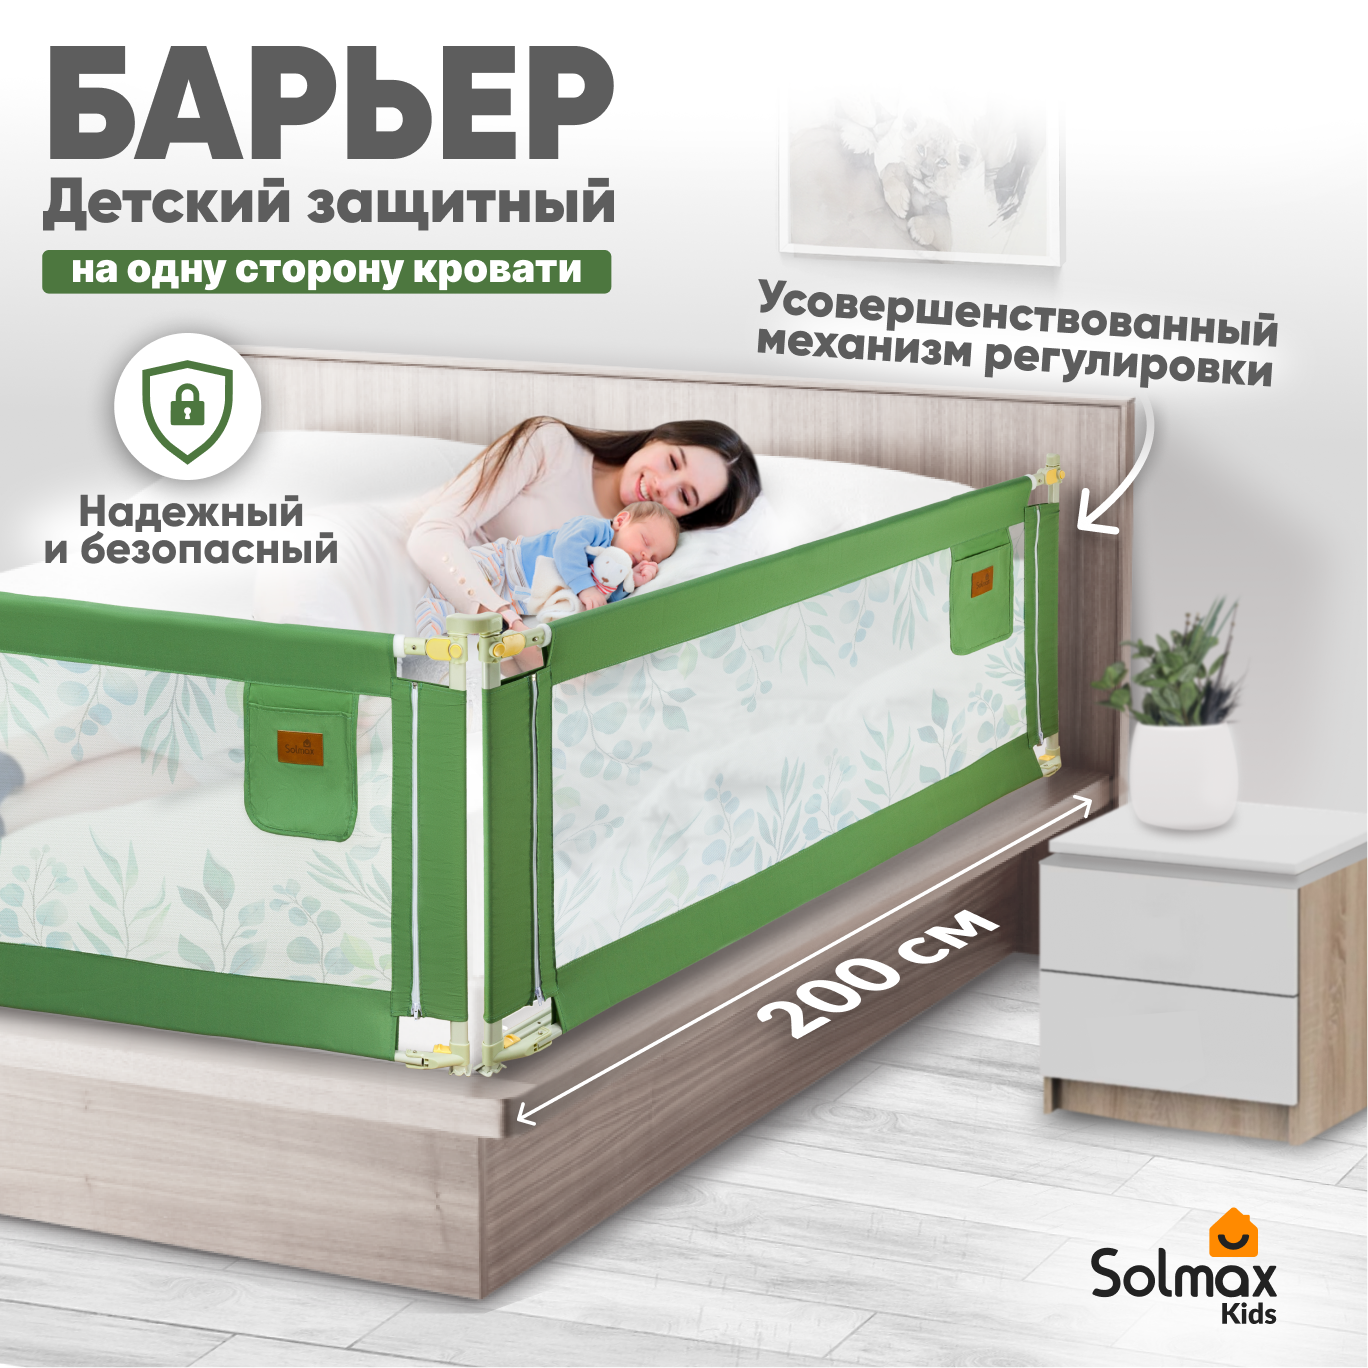 Барьер защитный для кровати от падений SOLMAX зеленый бортик в кроватку малыша 200 см барьер защитный для кровати от падений solmax зеленый бортик в кроватку 93 160 см